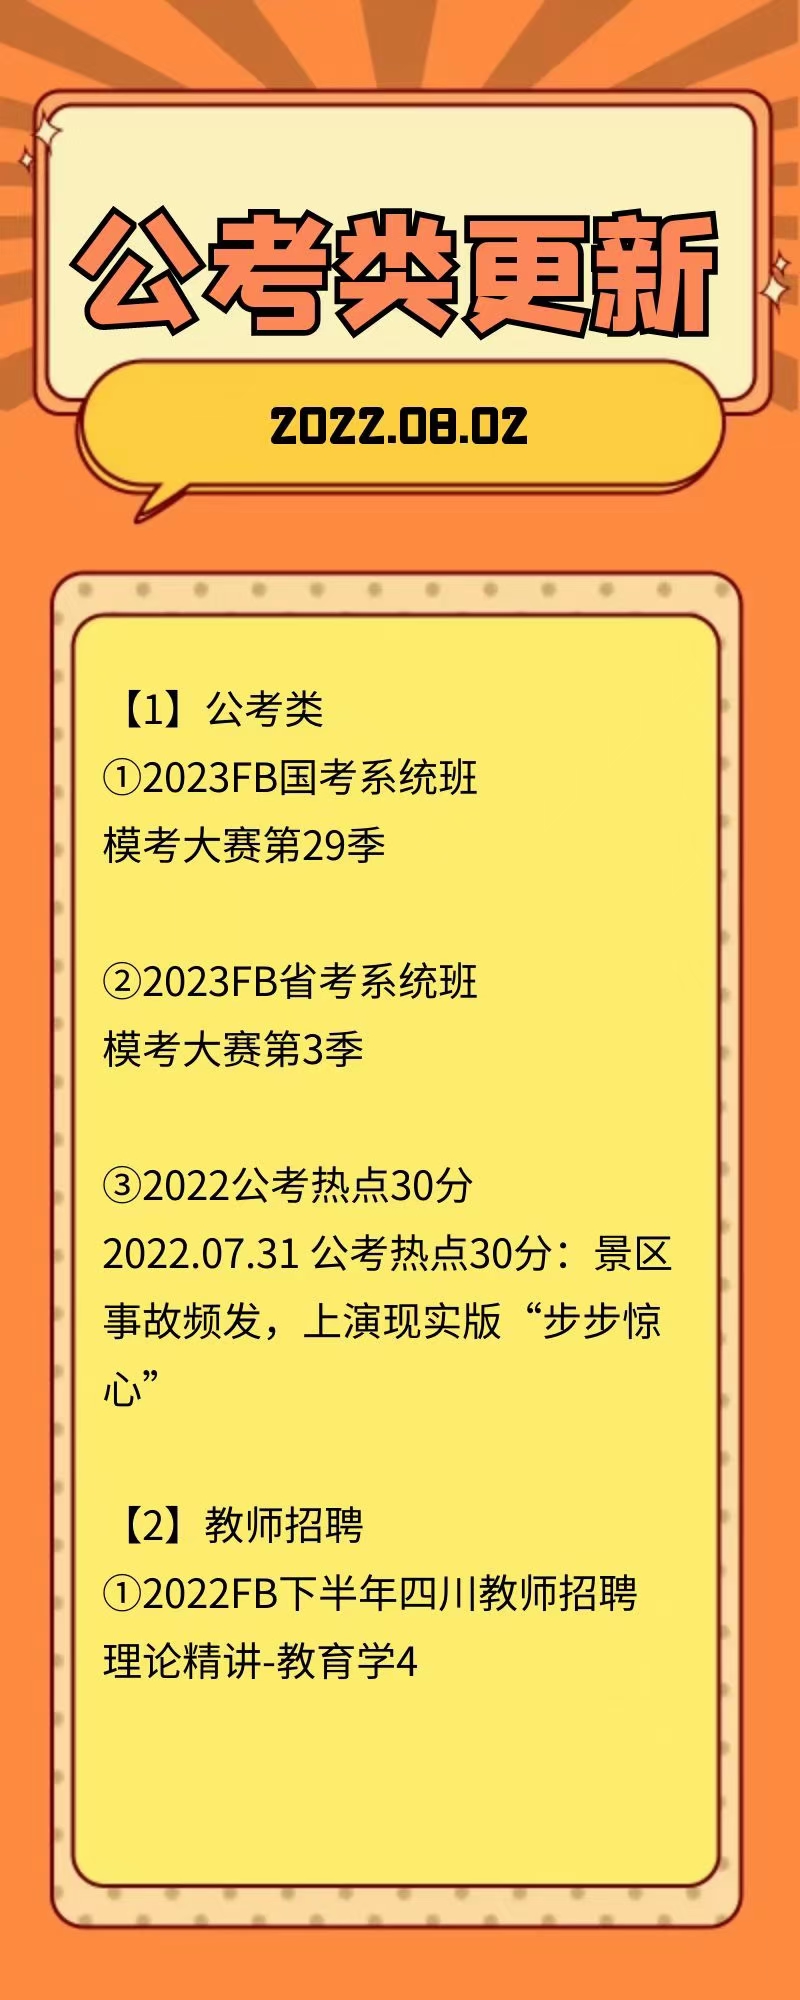 萌学院区08月02号更新 公务员 事业单位2022 教师招聘